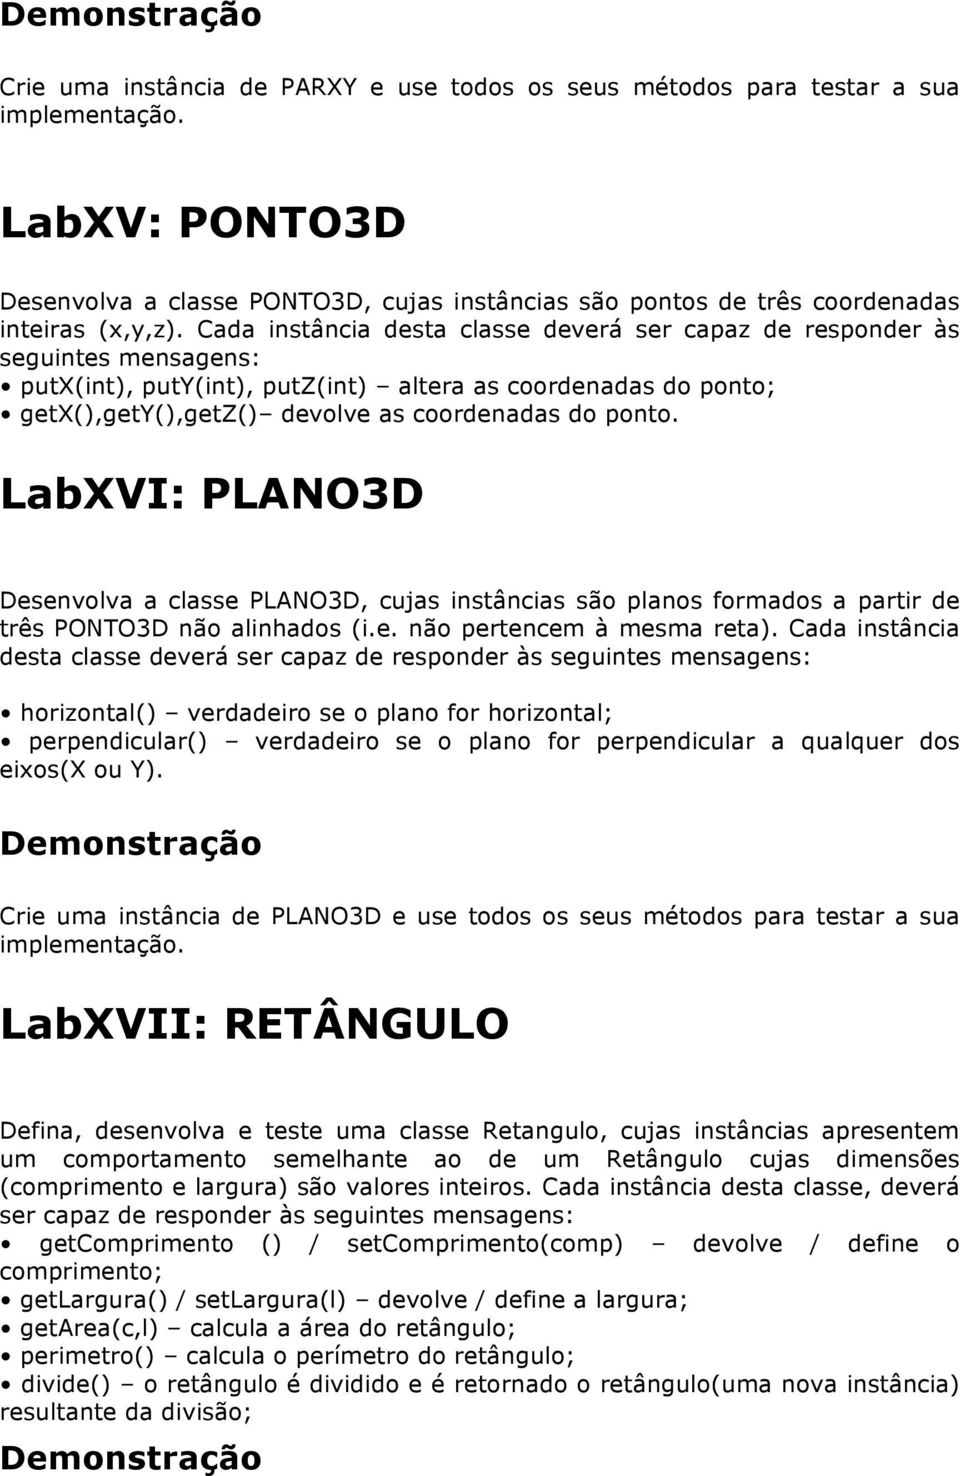 LabXVI: PLANO3D Desenvolva a classe PLANO3D, cujas instâncias são planos formados a partir de três PONTO3D não alinhados (i.e. não pertencem à mesma reta).